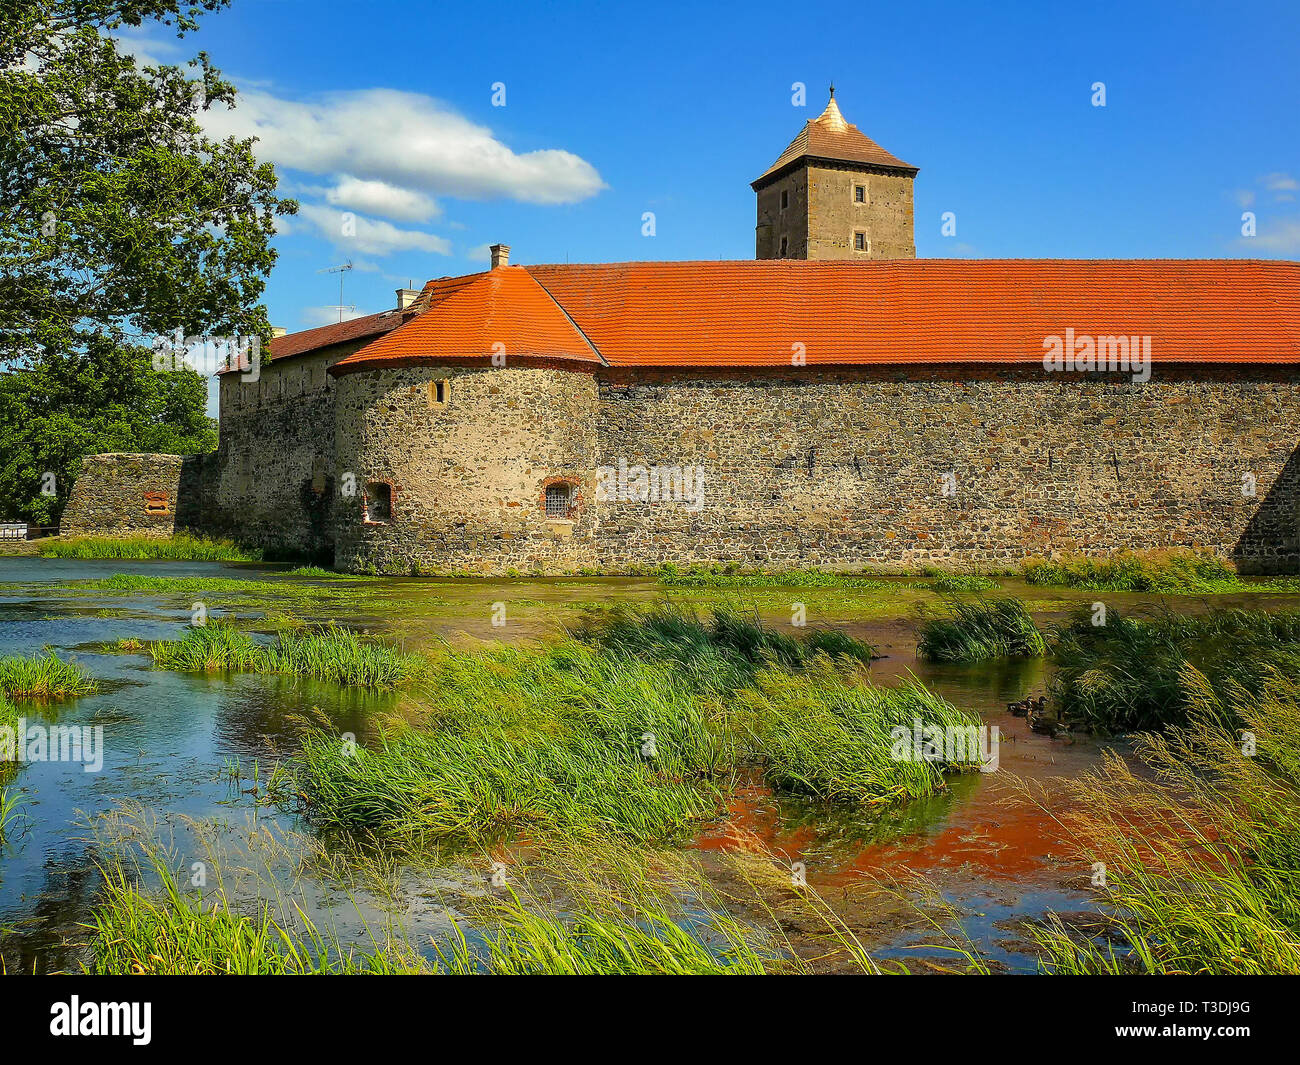 L'eau château de Svihov est situé dans la région de Pilsen, République Tchèque, Europe. Il y a canal d'eau autour du château en pierre. C'est château de la pierre Banque D'Images